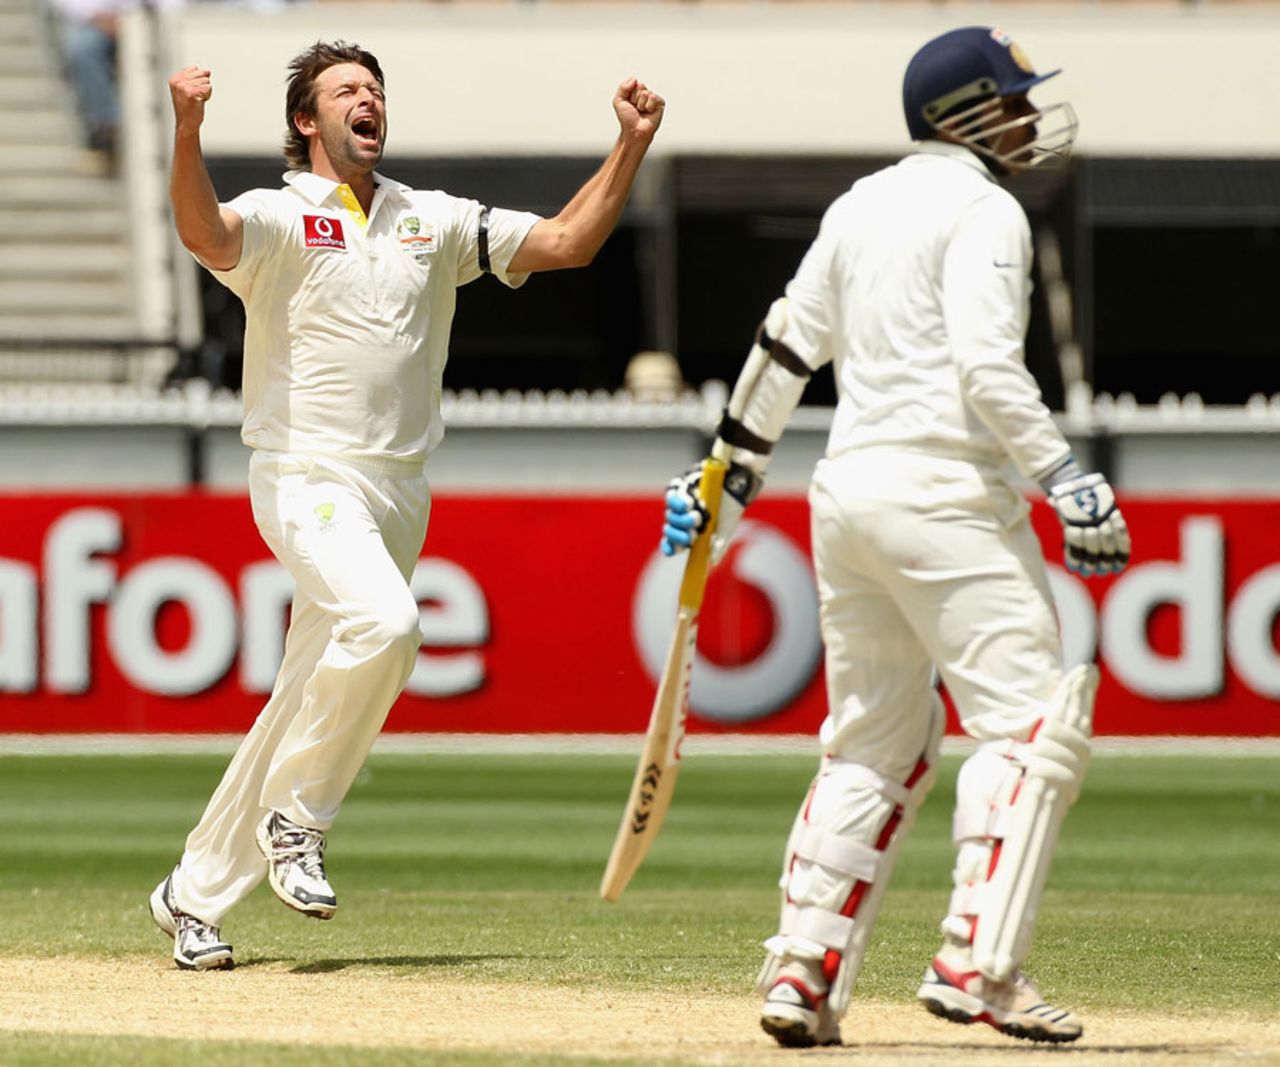 Ben Hilfenhaus is pumped up after dismissing Virender Sehwag, Australia v India, 1st Test, Melbourne, 4th day, December 29, 2011